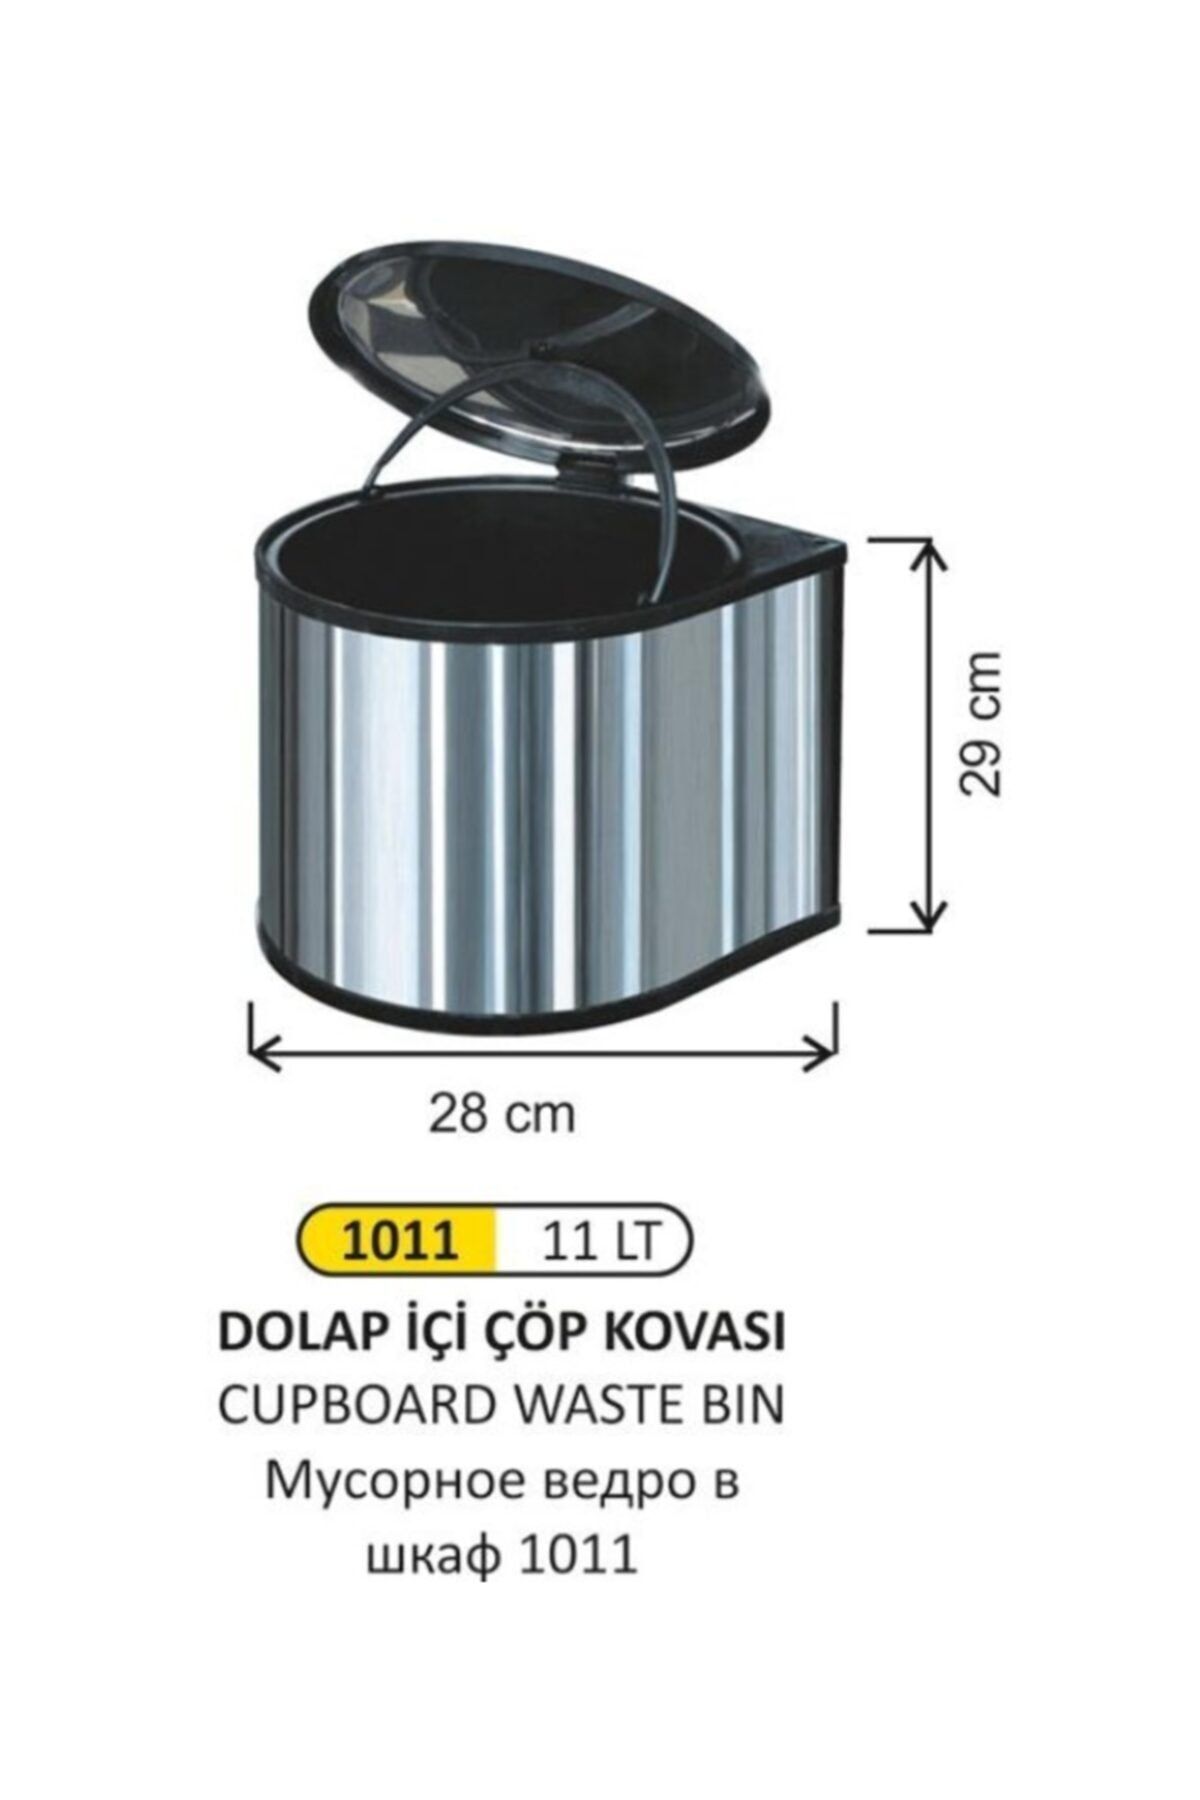 Arı Metal 1011 - Dolap Içi Çöp Kovası